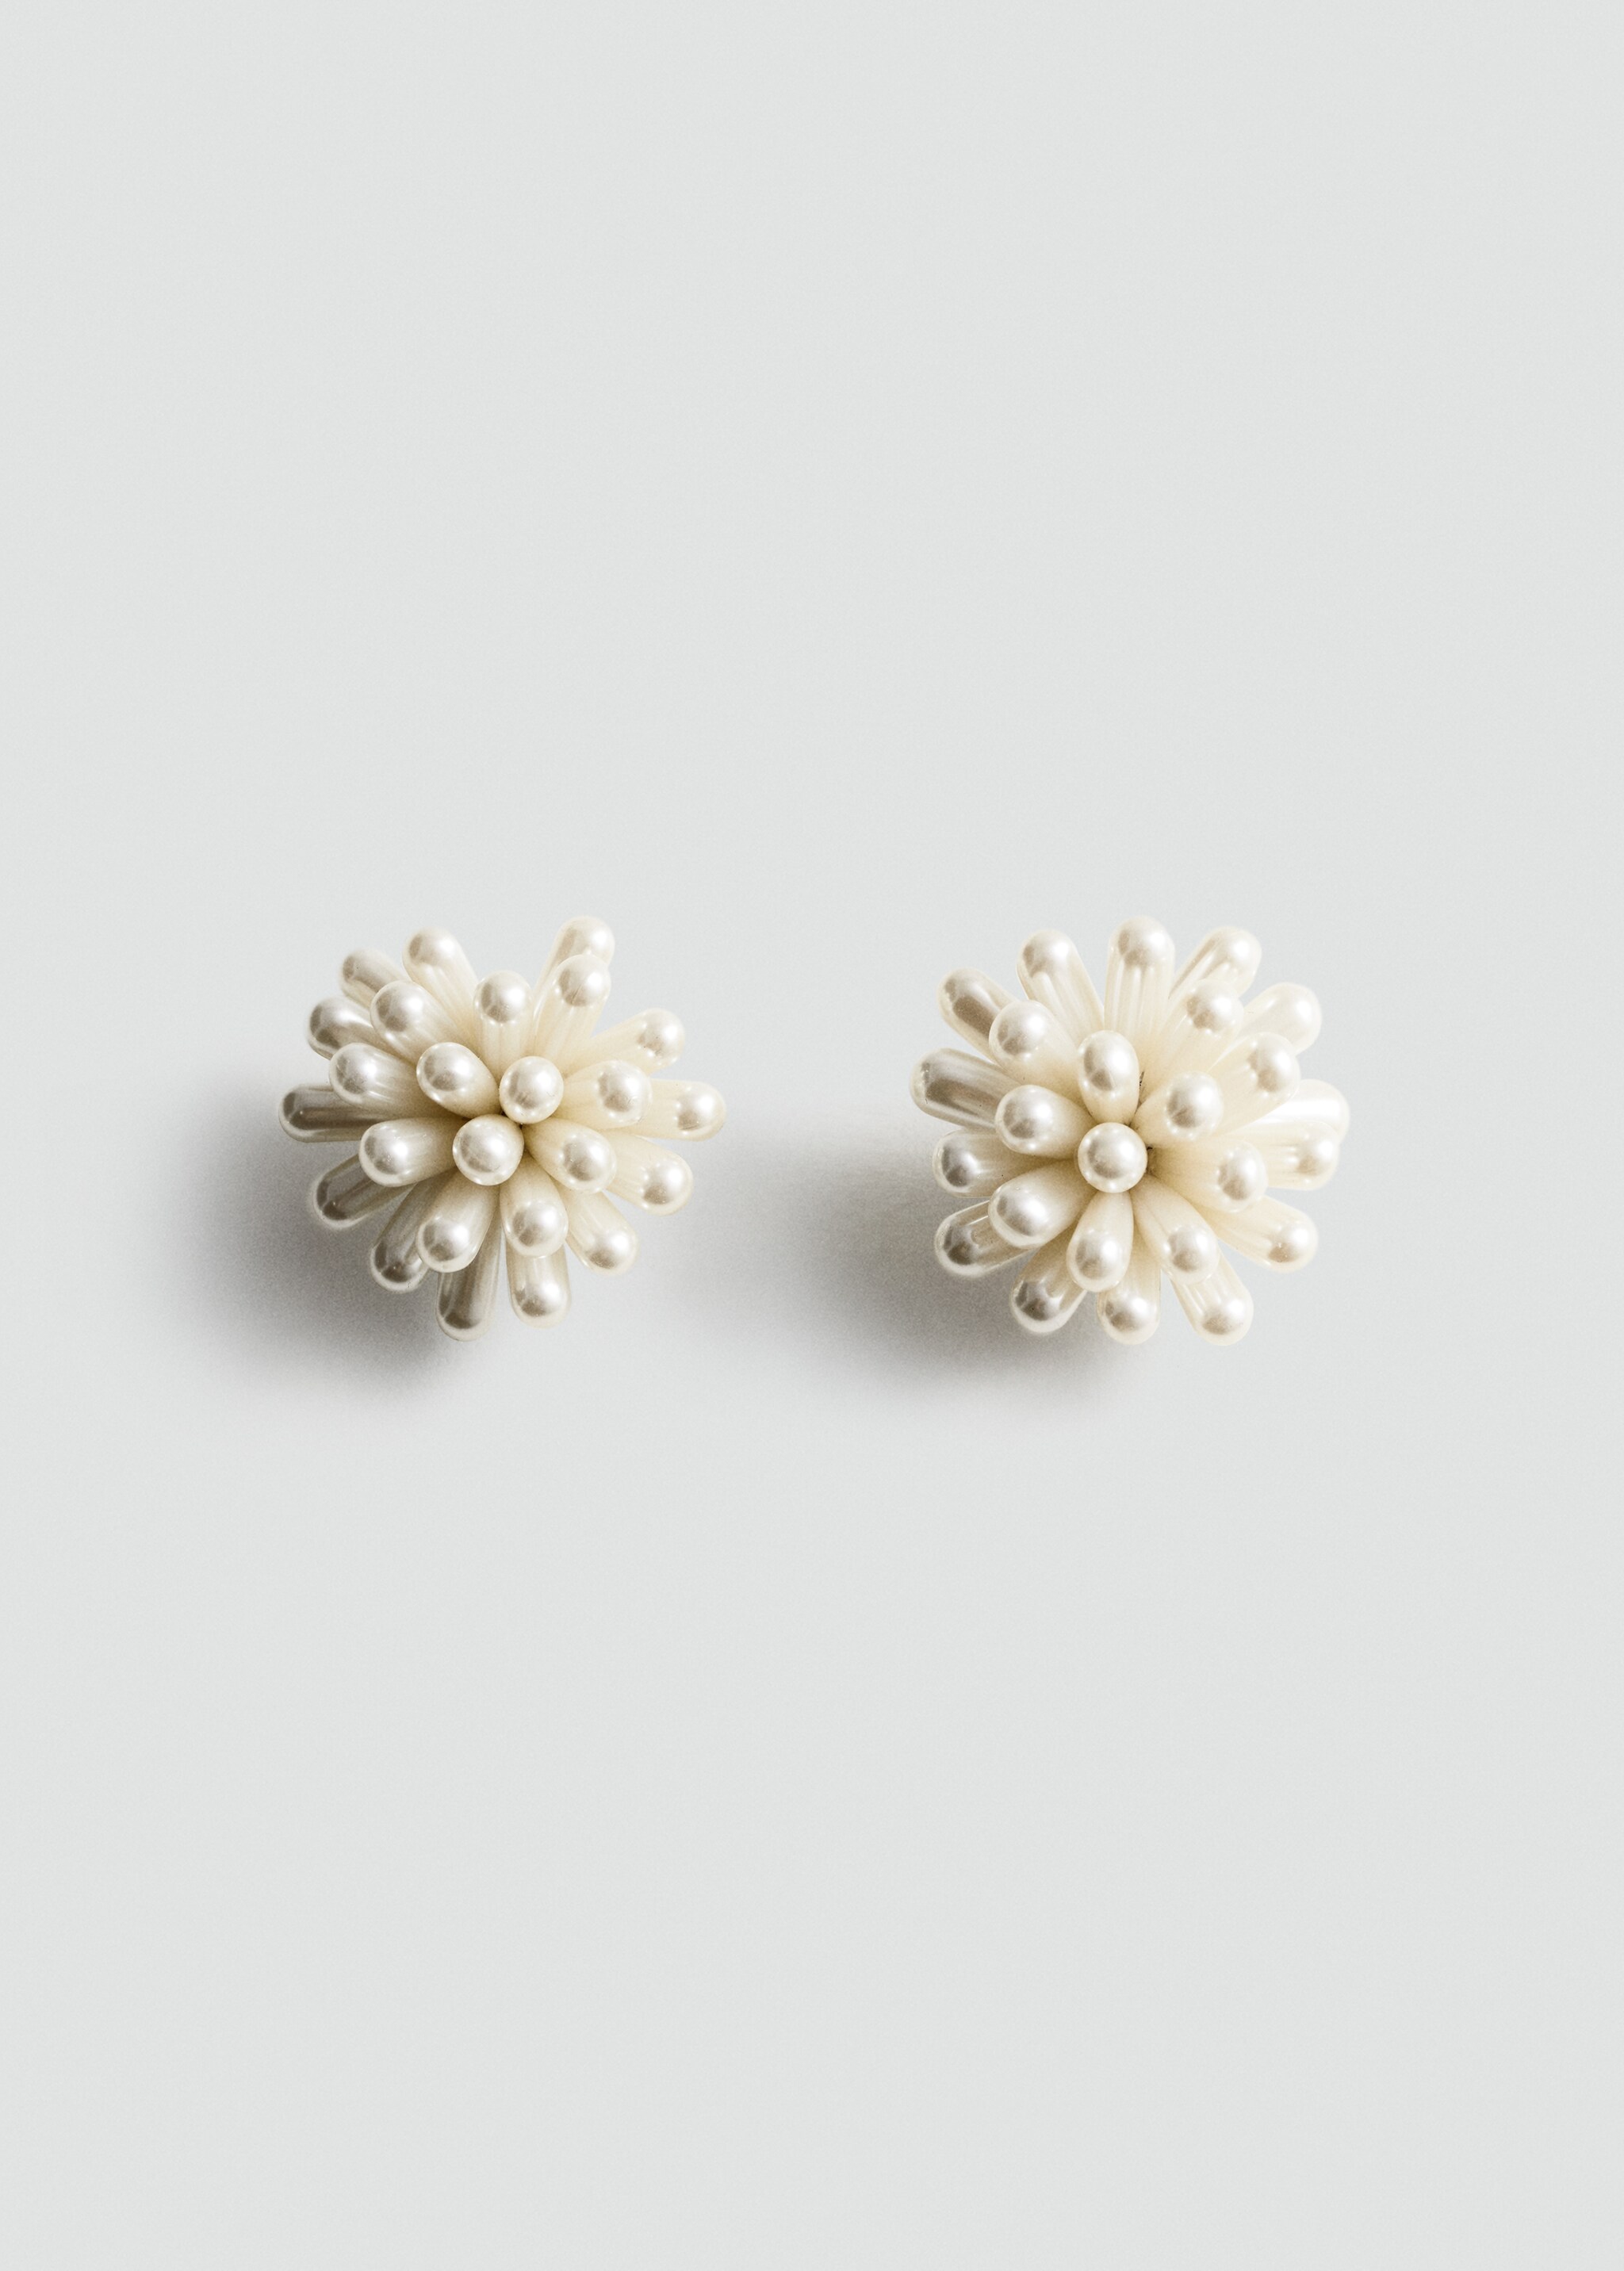 Boucles d'oreilles perles - Article sans modèle